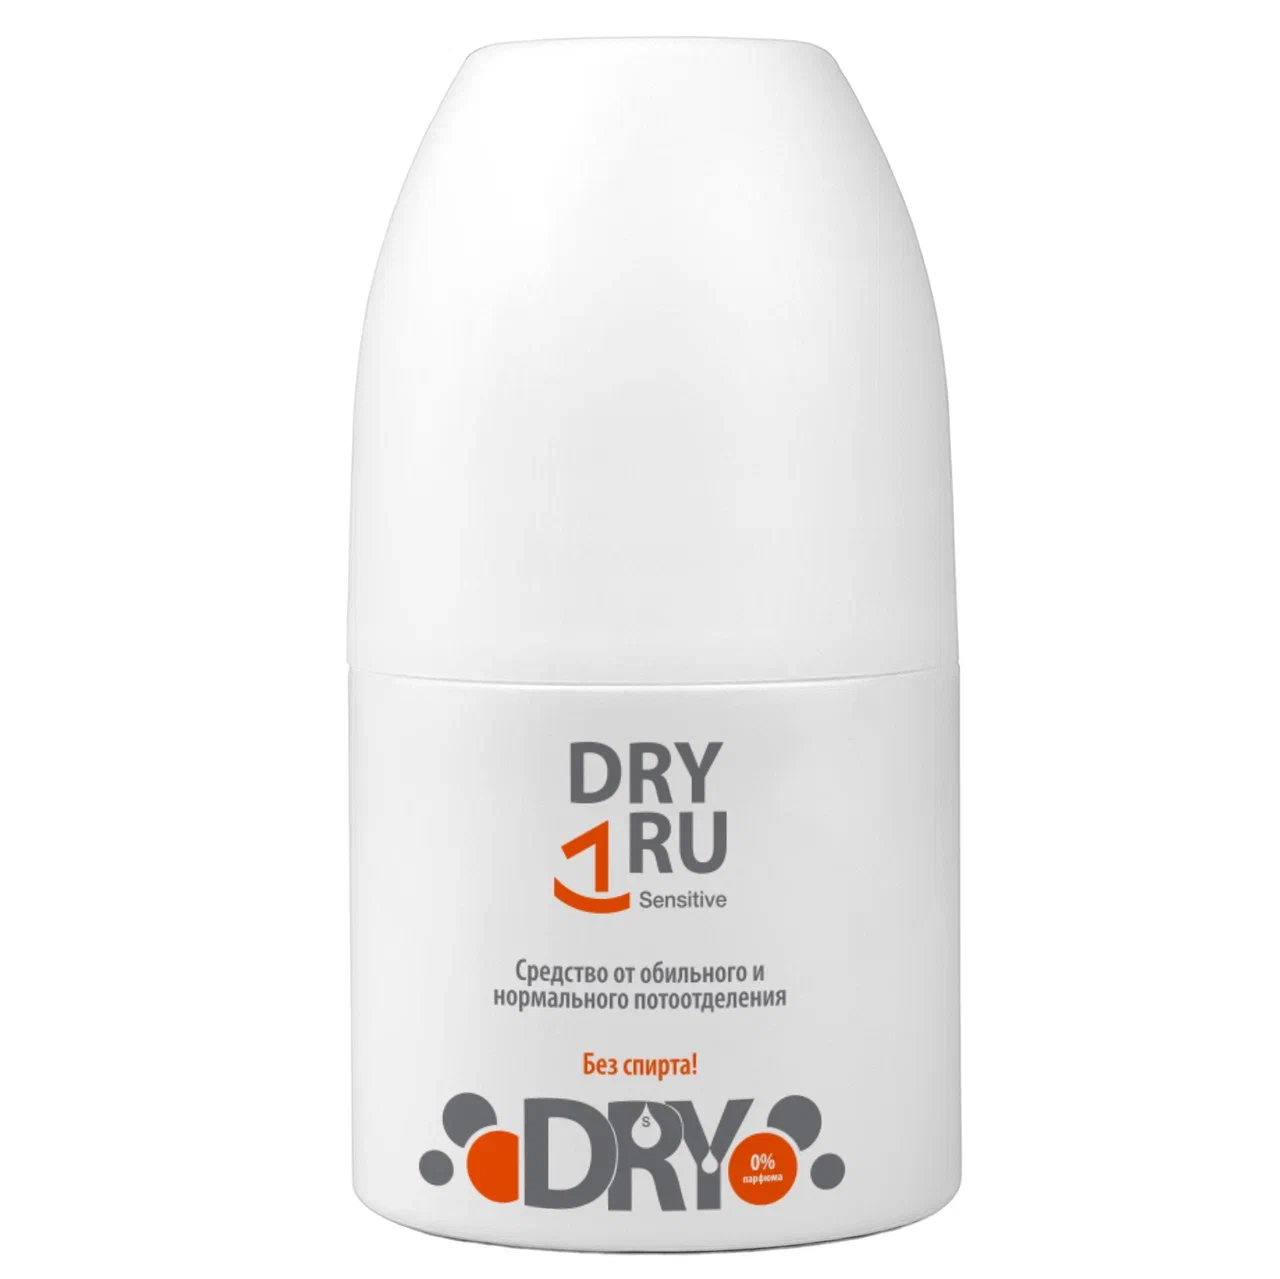 Дезодорант-антиперспирант DRY RU Sensitive шариковый, от пота и запаха 50 мл